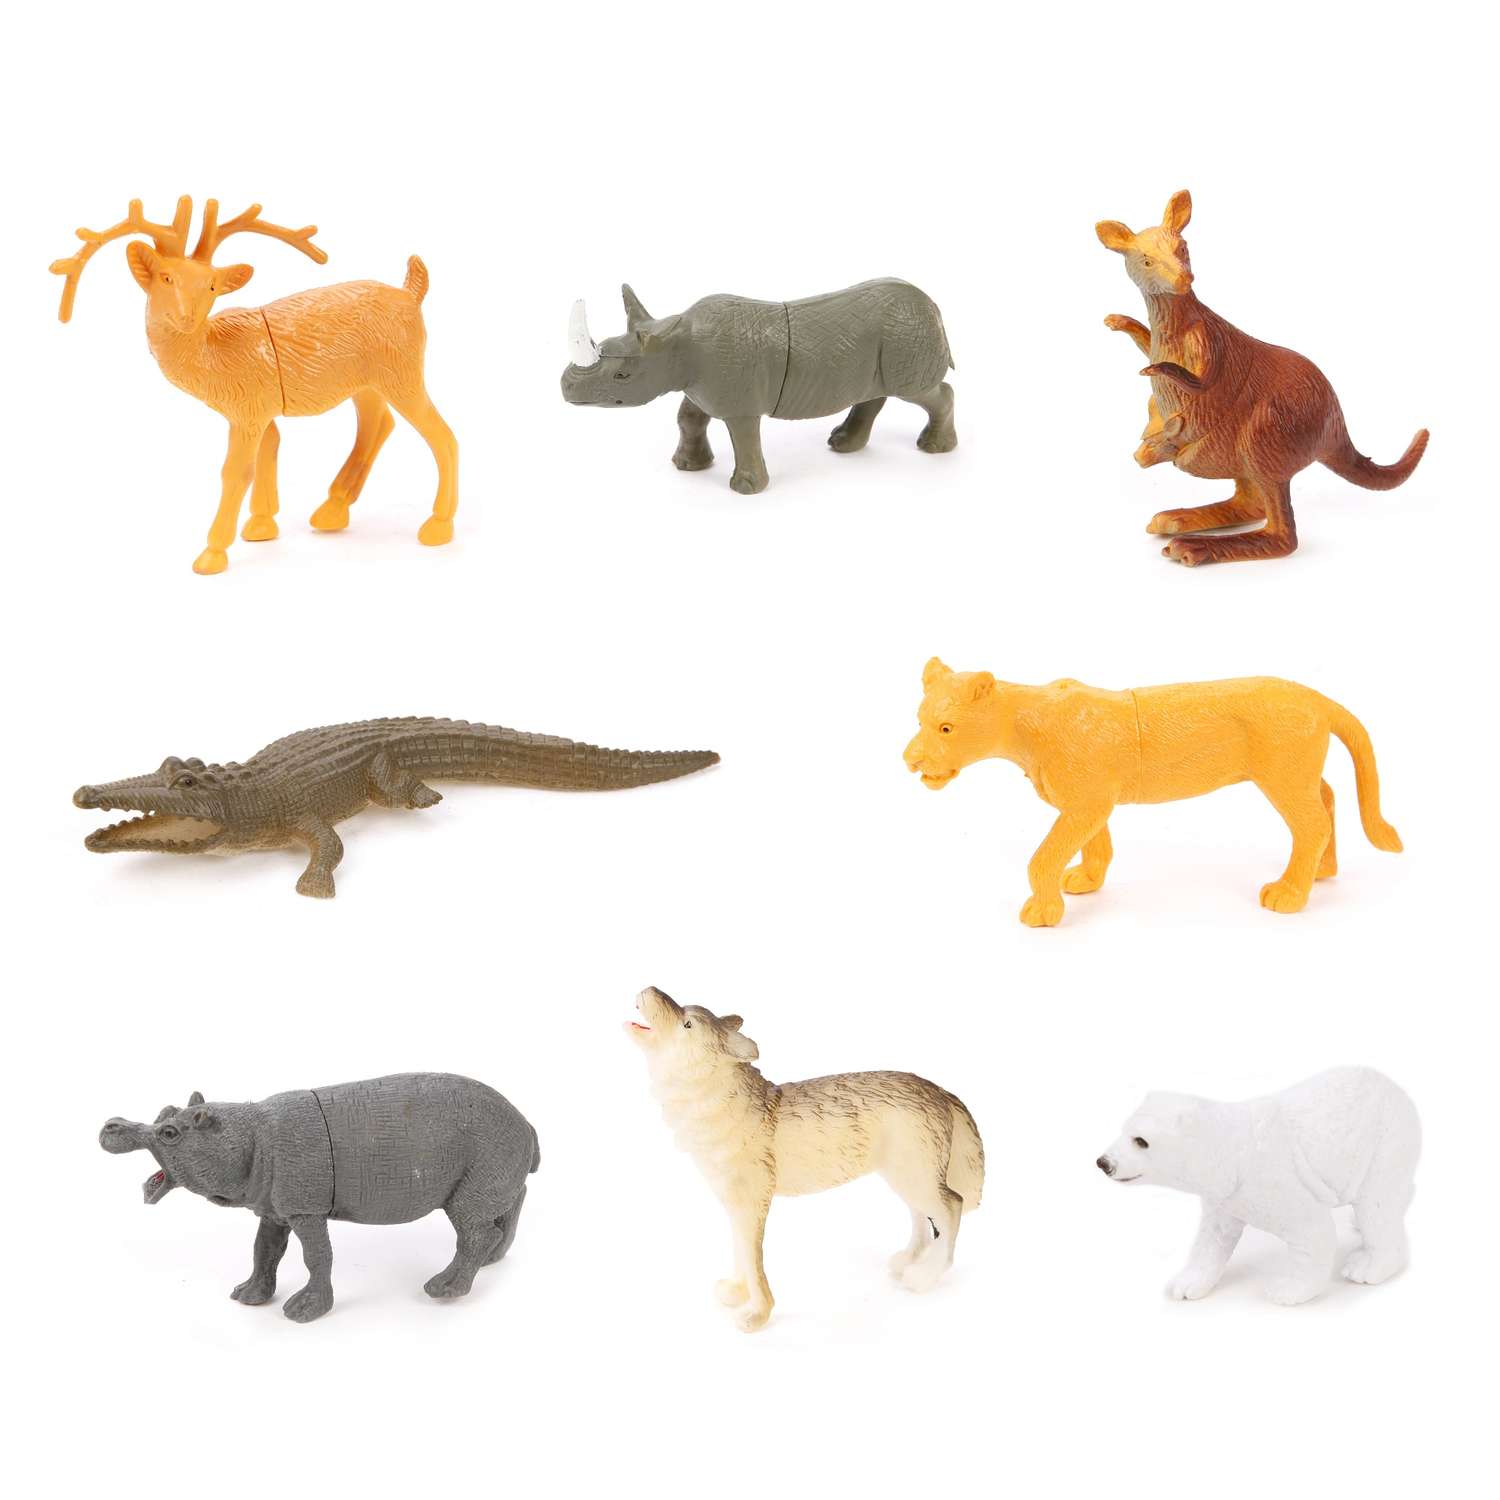 Фигурки животных Диких Наша Игрушка набор игровой для развития и познания 9 см 8 шт - фото 1